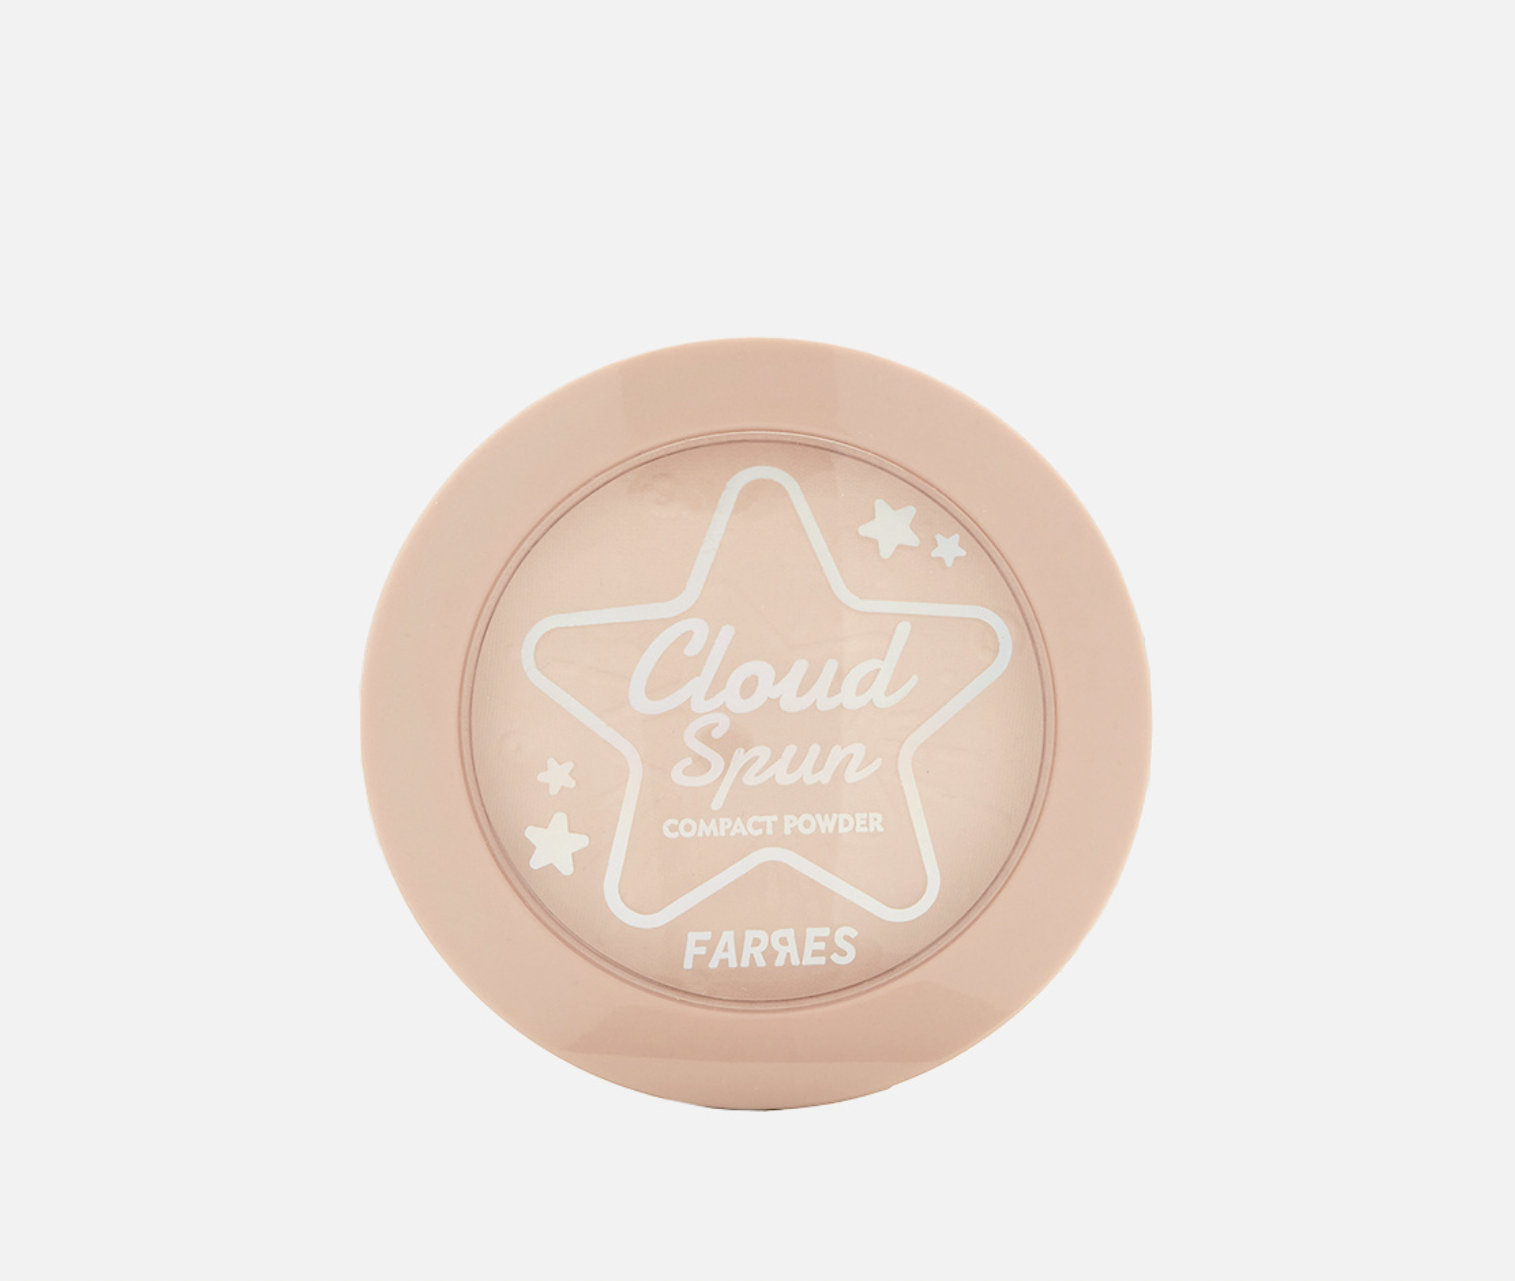   / Farres -     Cloud Spun 3026-03, 8,6 